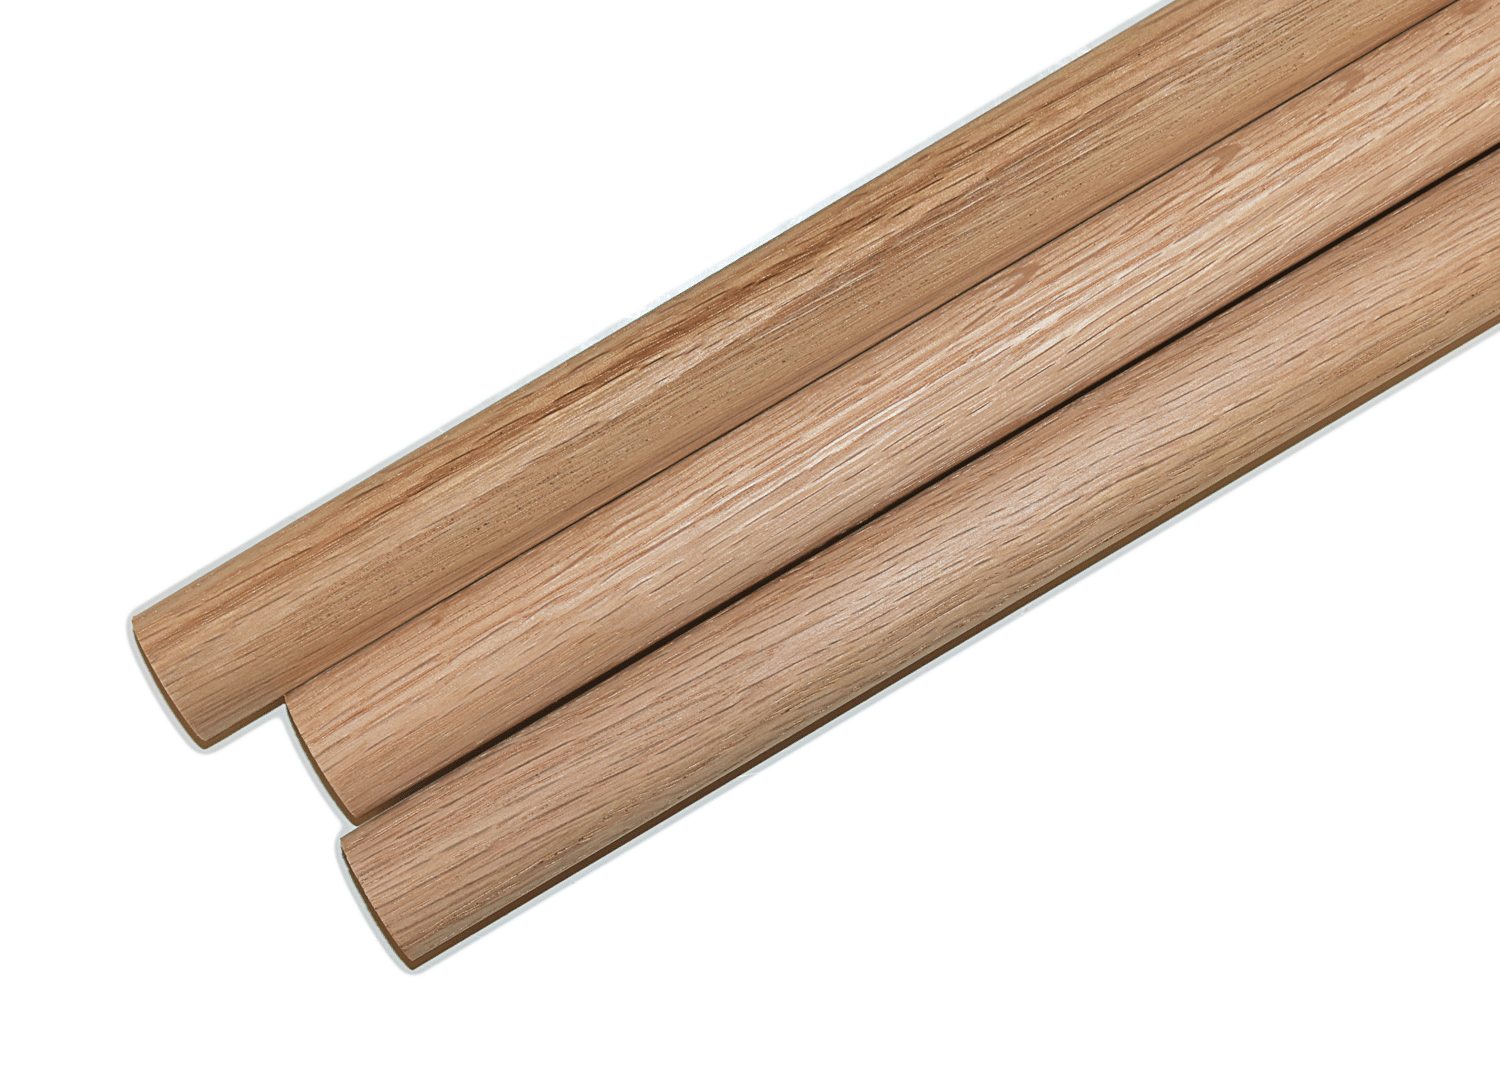 1/4 x 36 Wooden Dowel